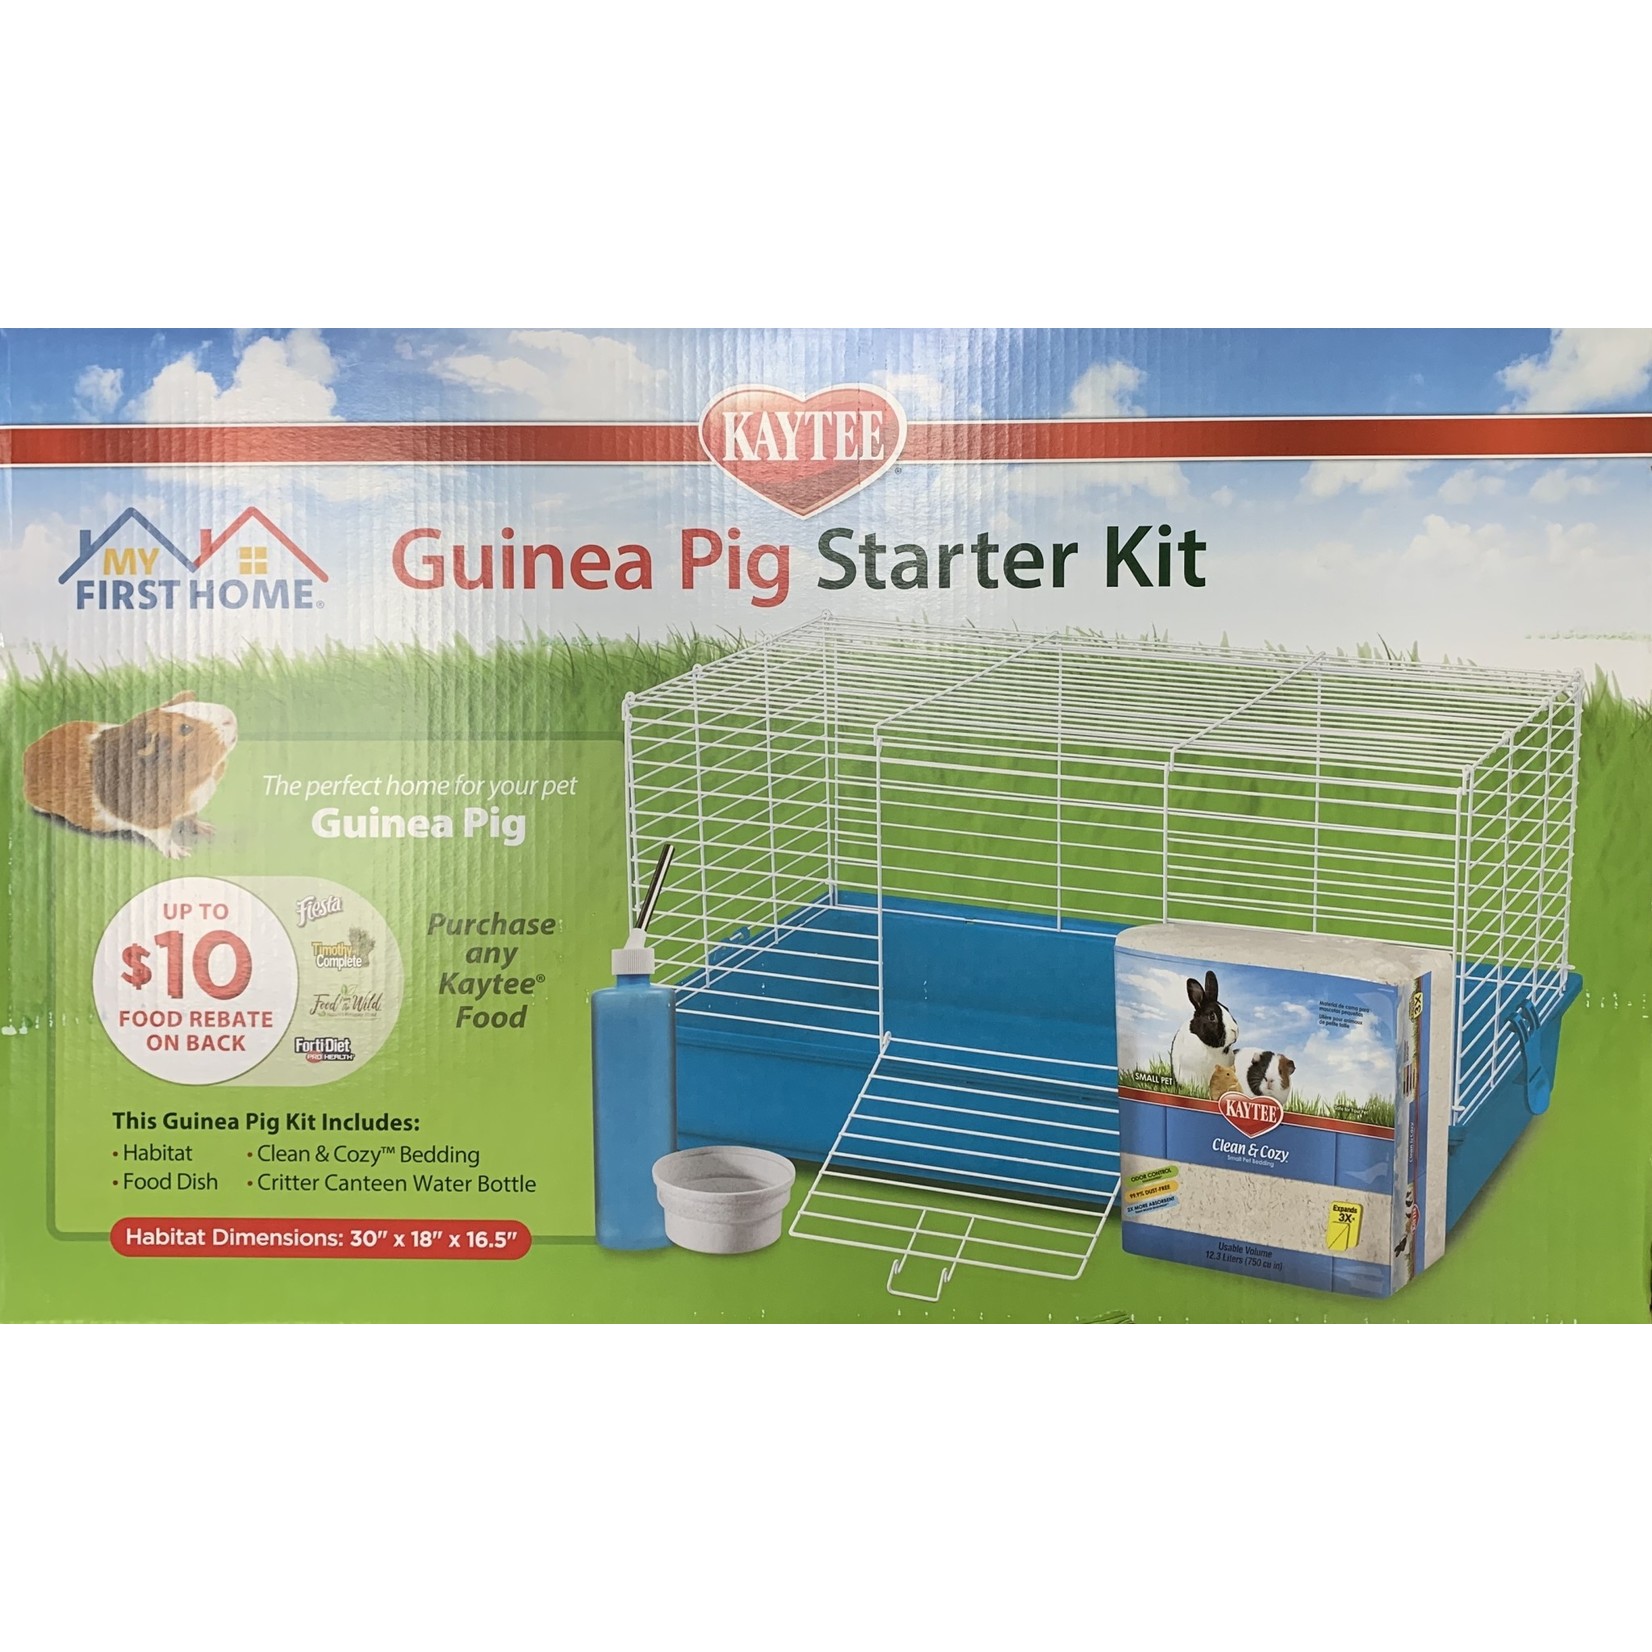 KAYTEE Guinea Pig Starter Kit 30x18x16.5